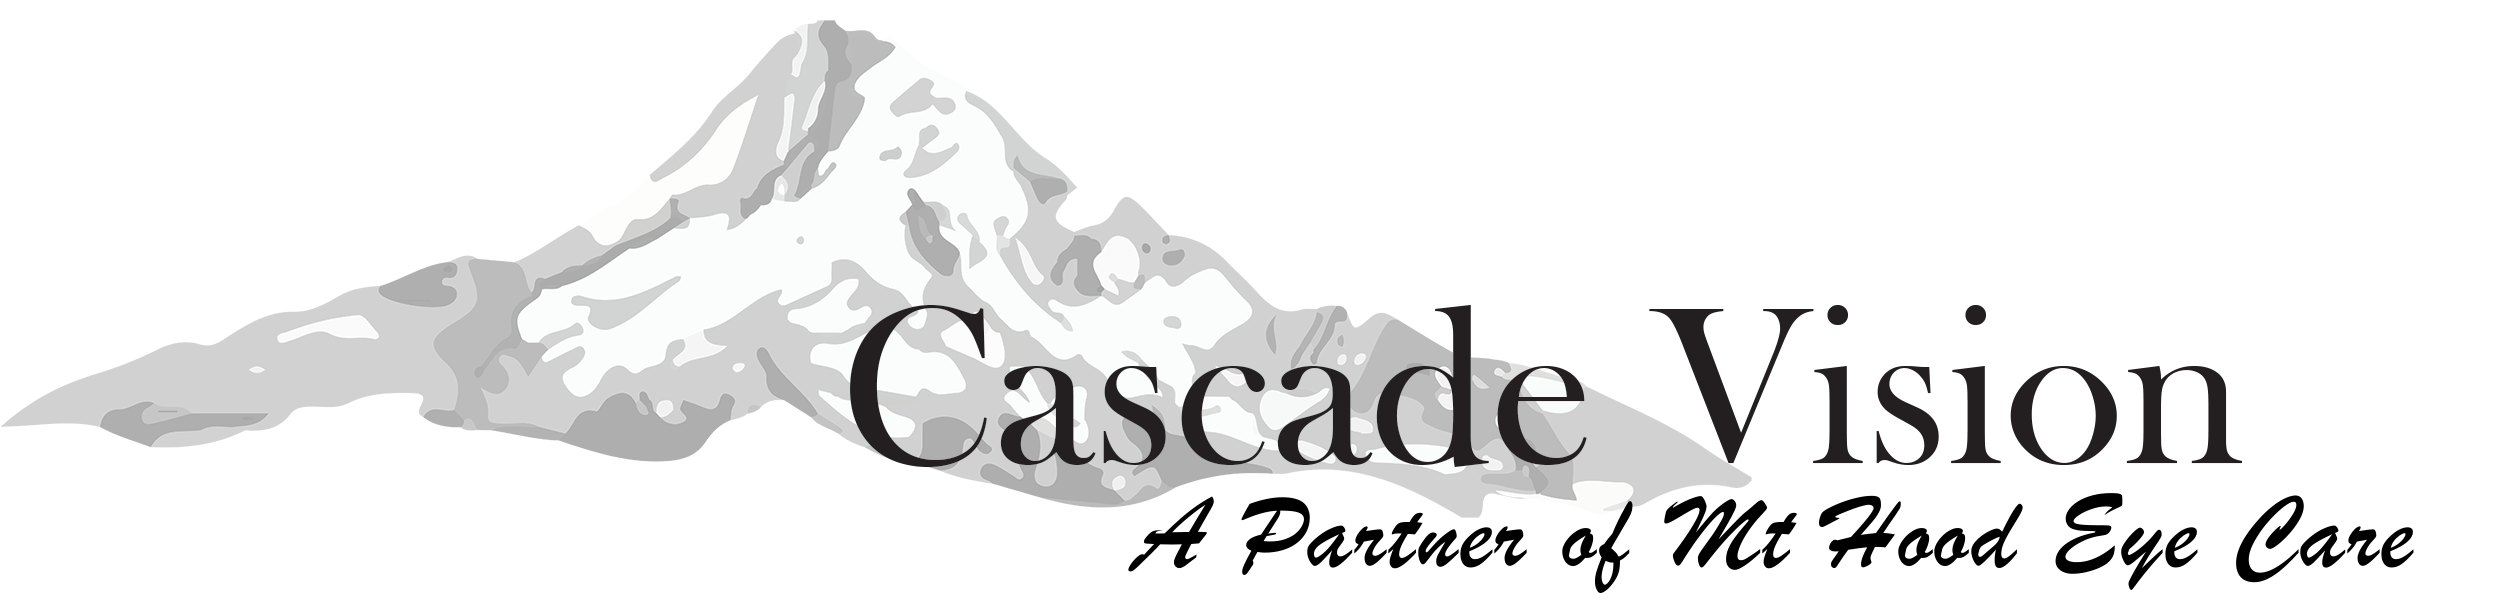 Cascade Vision logo.png